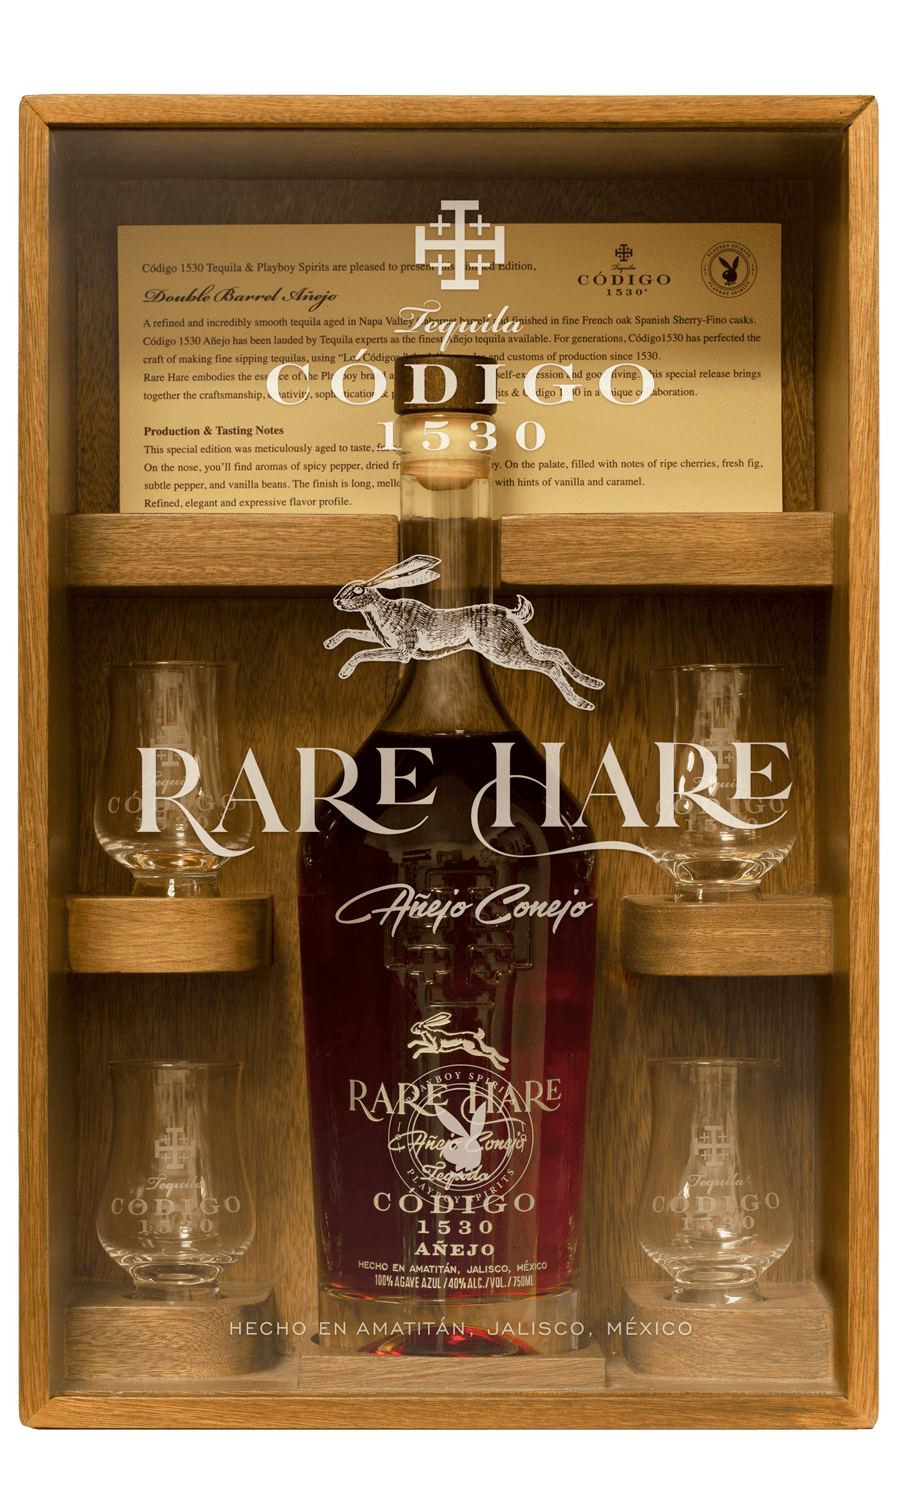 Playboy  Codigo 1530 'Rare Hare' Double Barrel Anejo Tequila - Classic  Liquor Shop